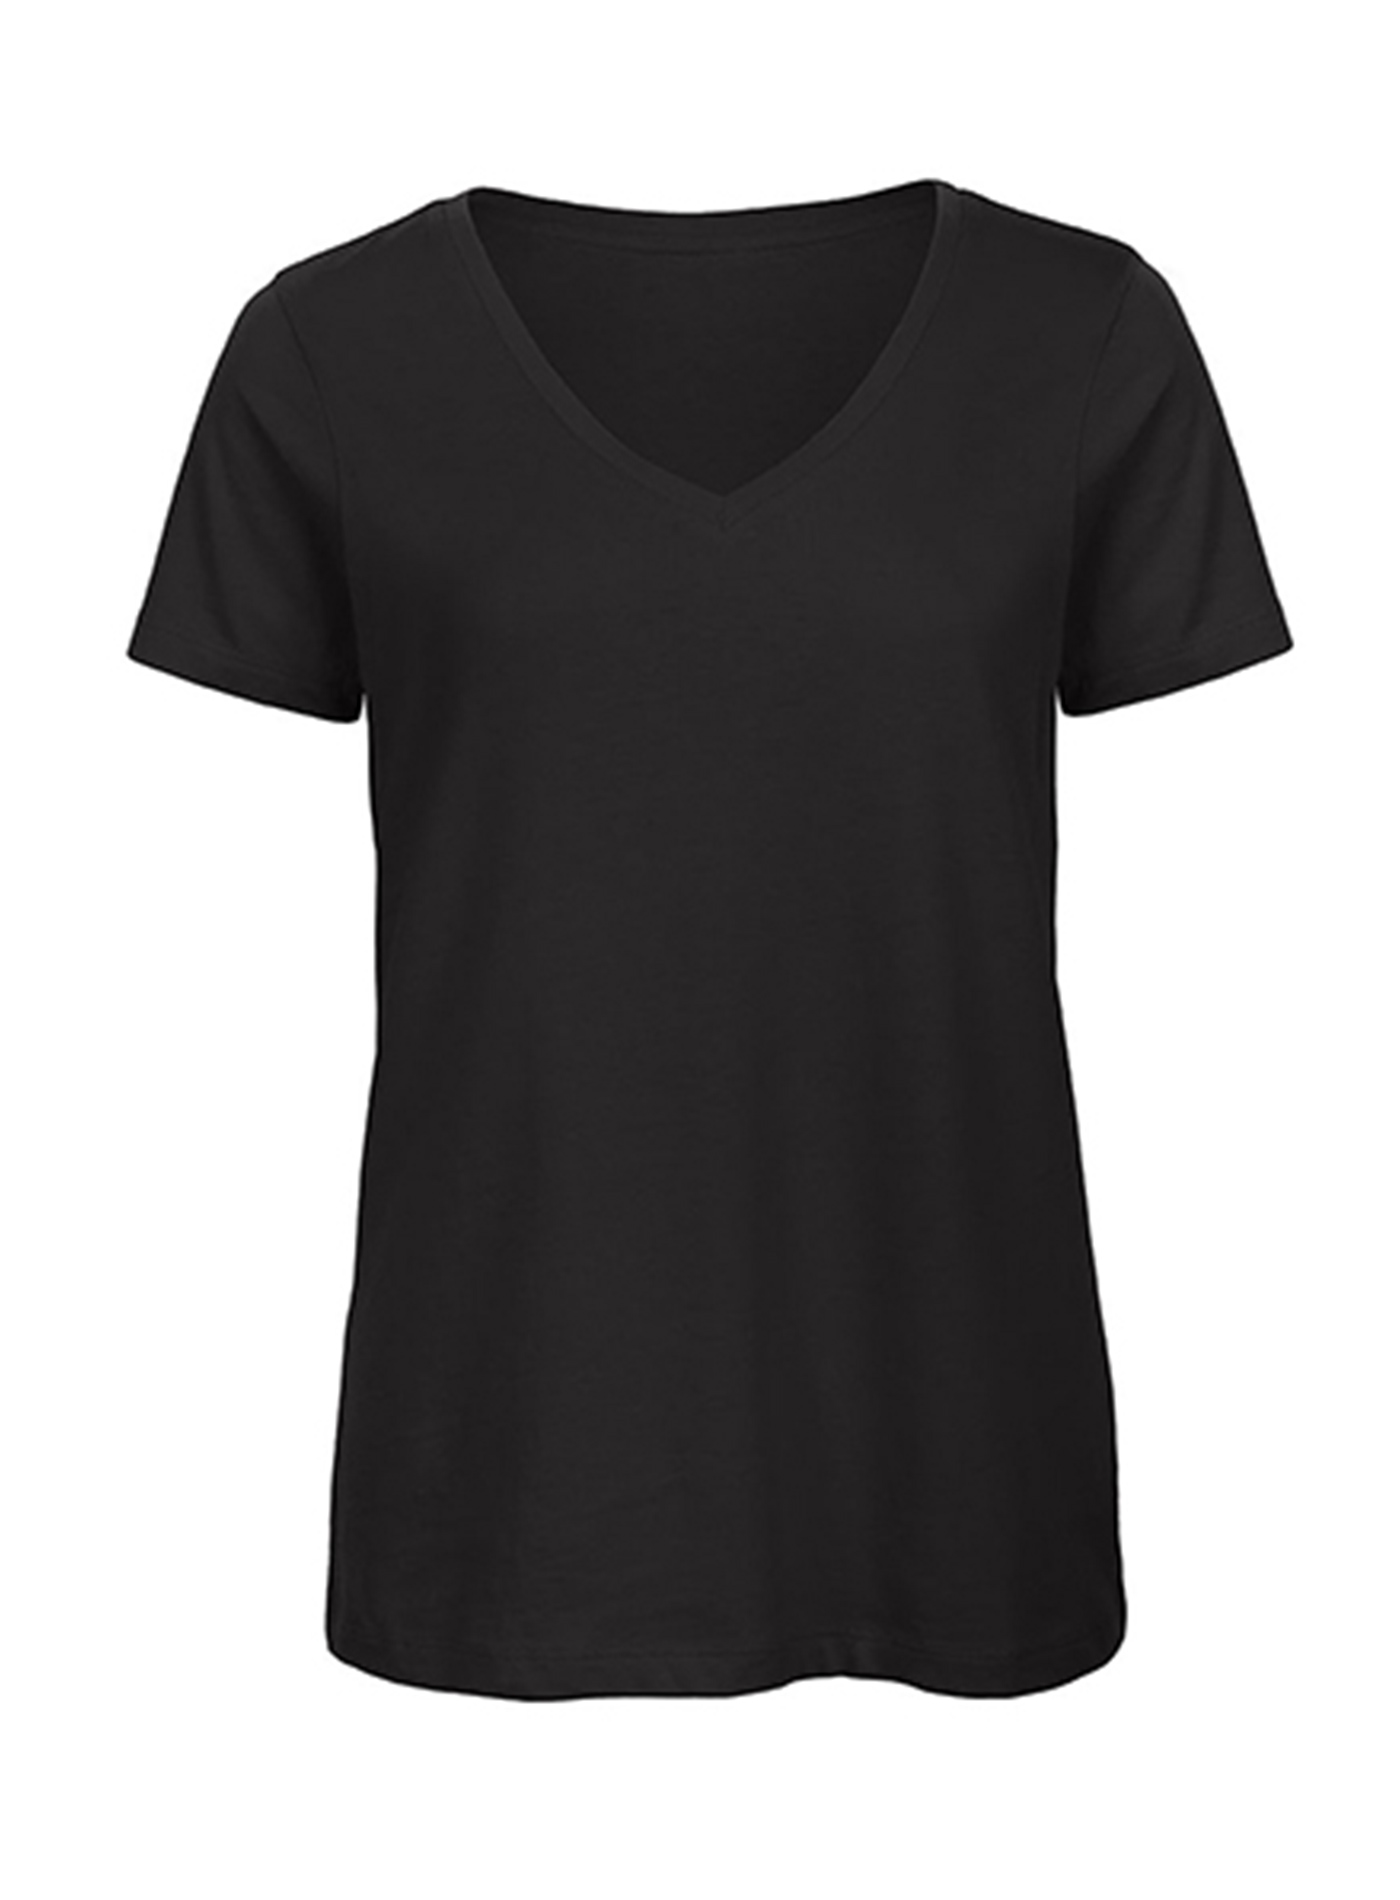 Dámské tričko s výstřihem do V B&C Collection Inspire - černá S